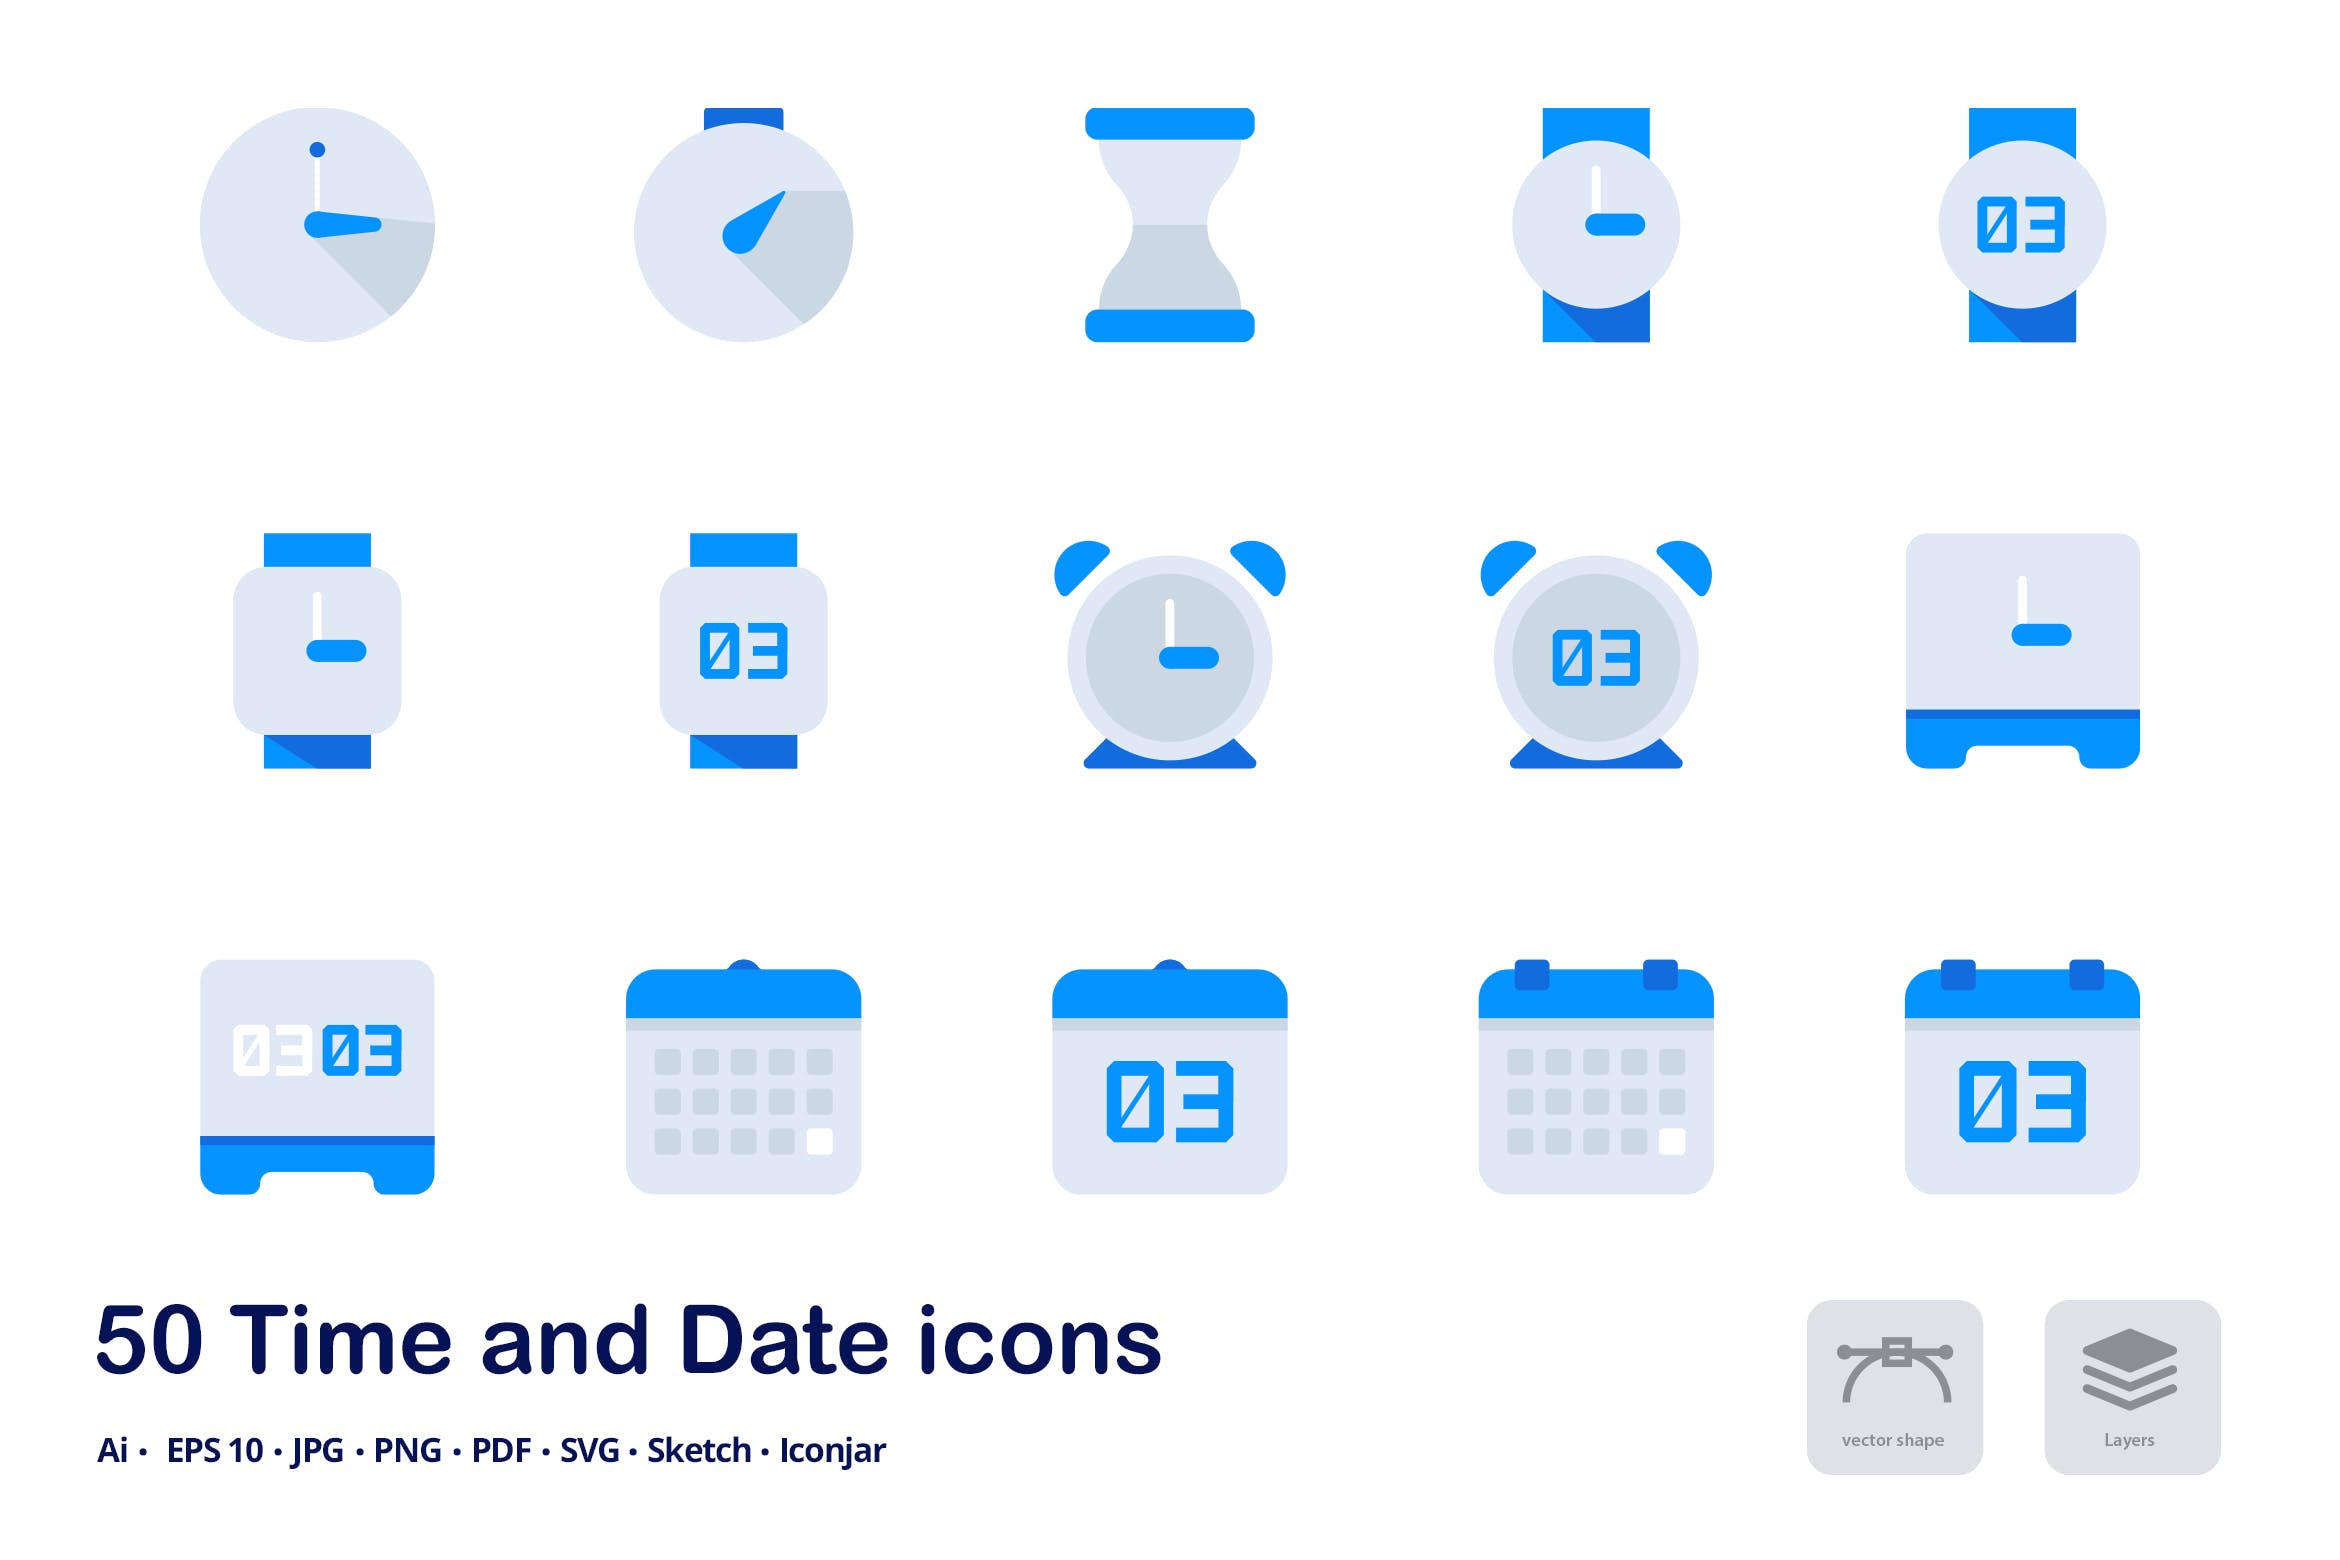 时间&日期双色调扁平化矢量图标 Time and Date Accent Duo Tone Flat Icons插图